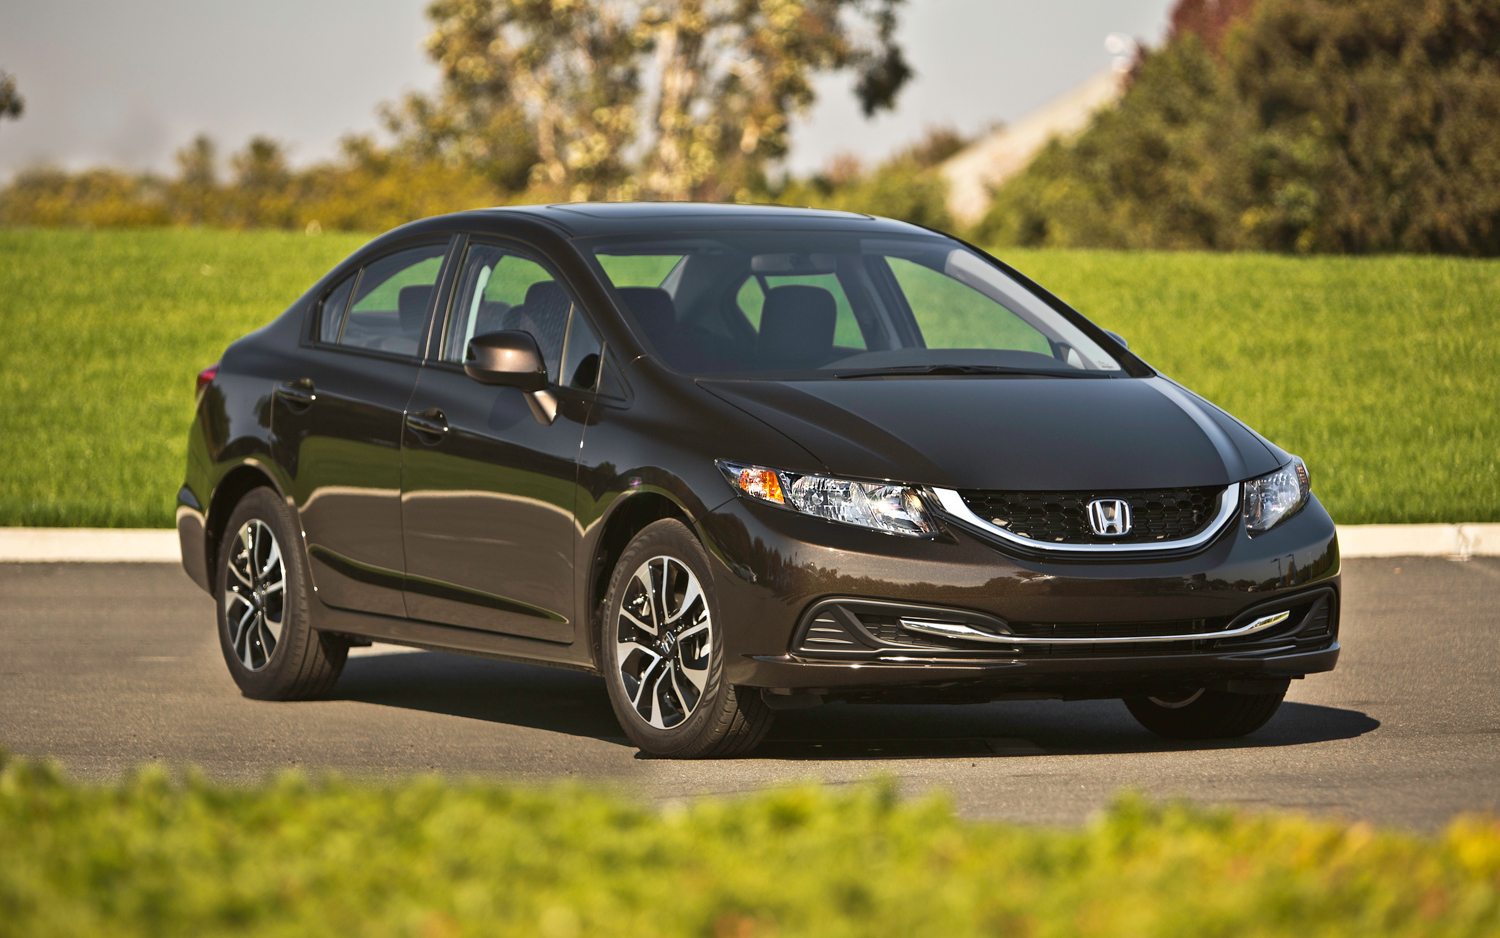 Honda Civic 2013 là mẫu ô tô giá rẻ mang phong cách thể thao